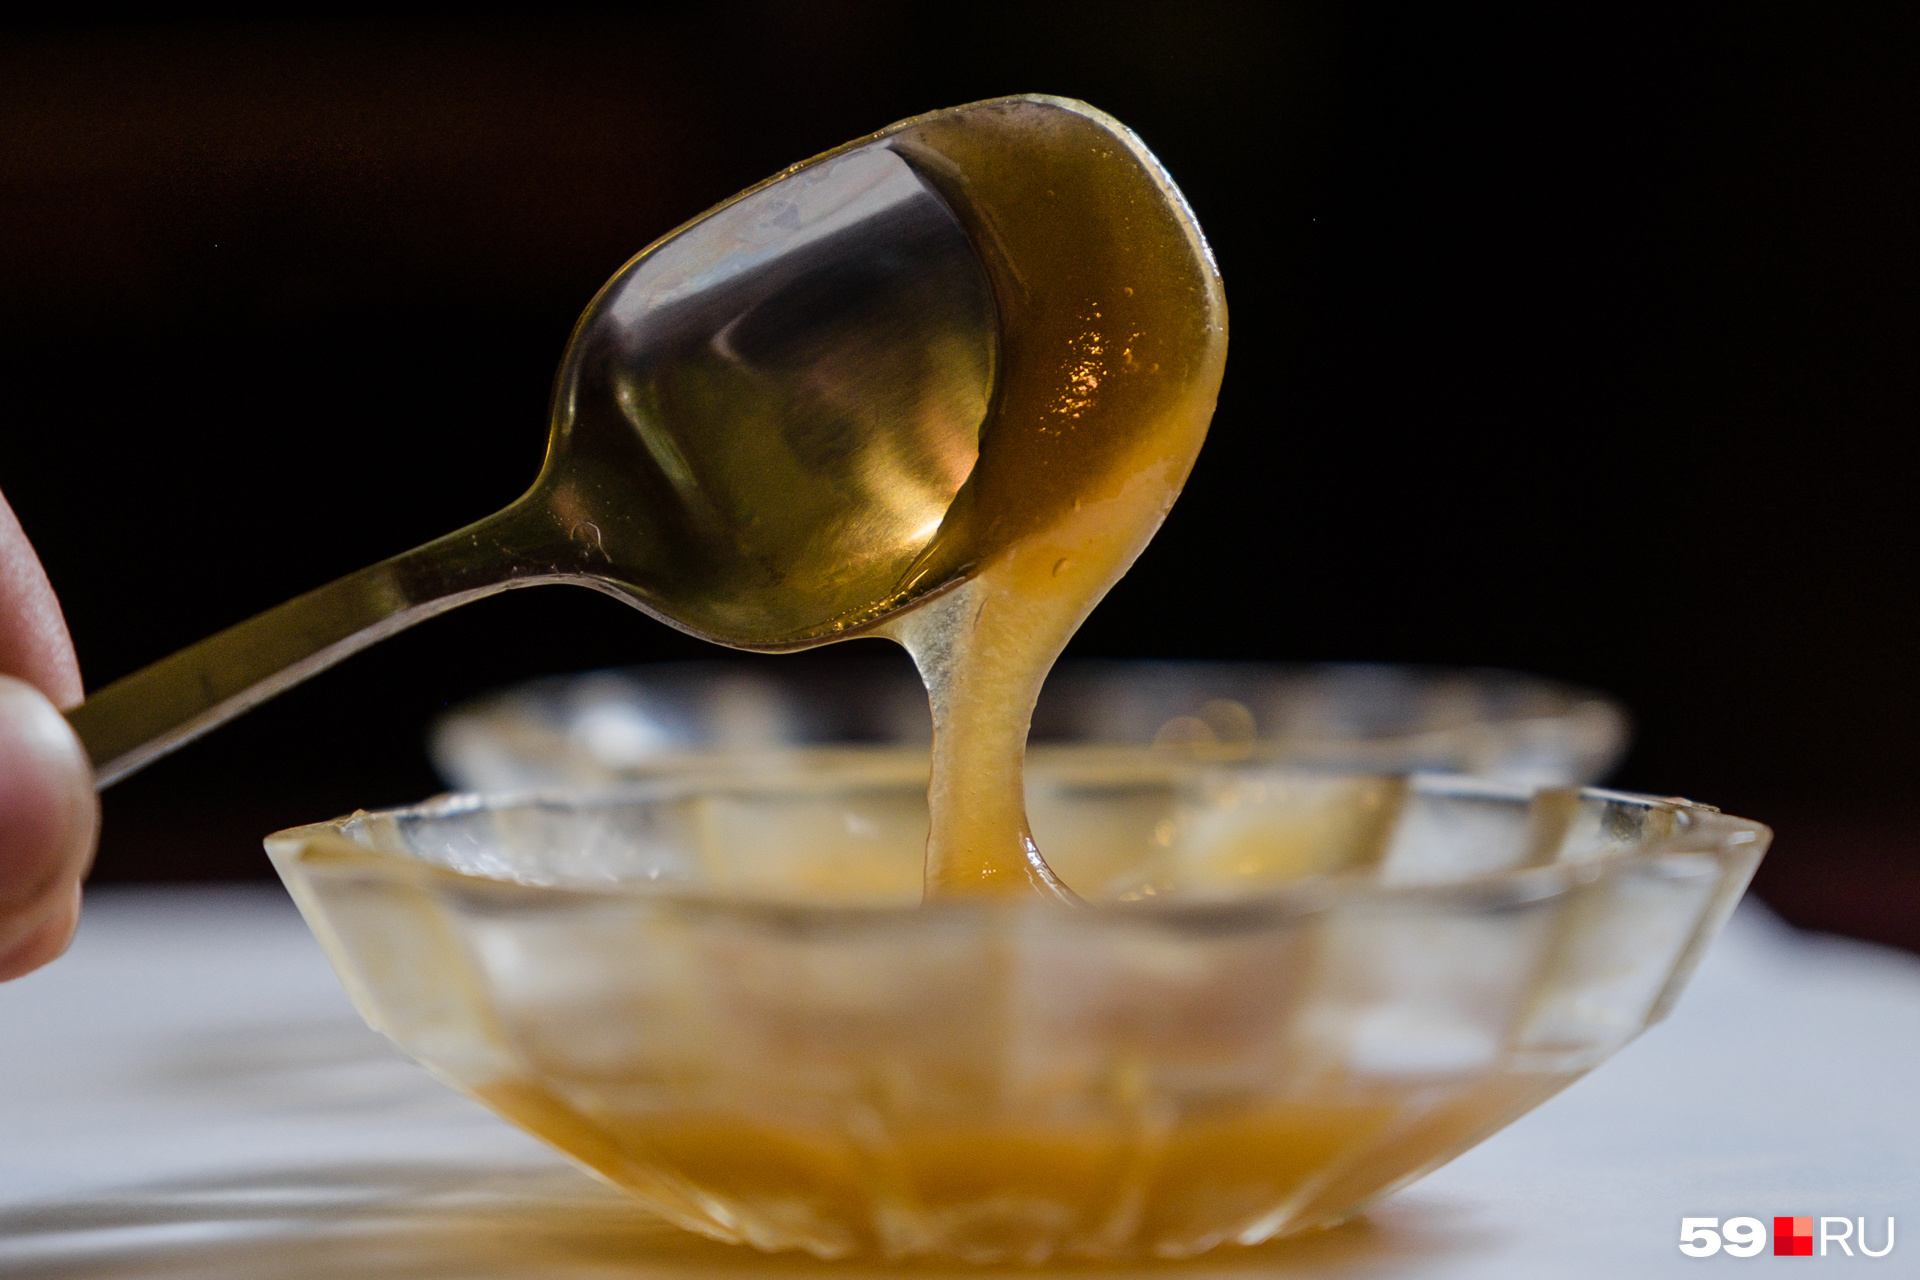 Мёд с молоком хорошо сочетаются вместе, если не нагревать их сильно